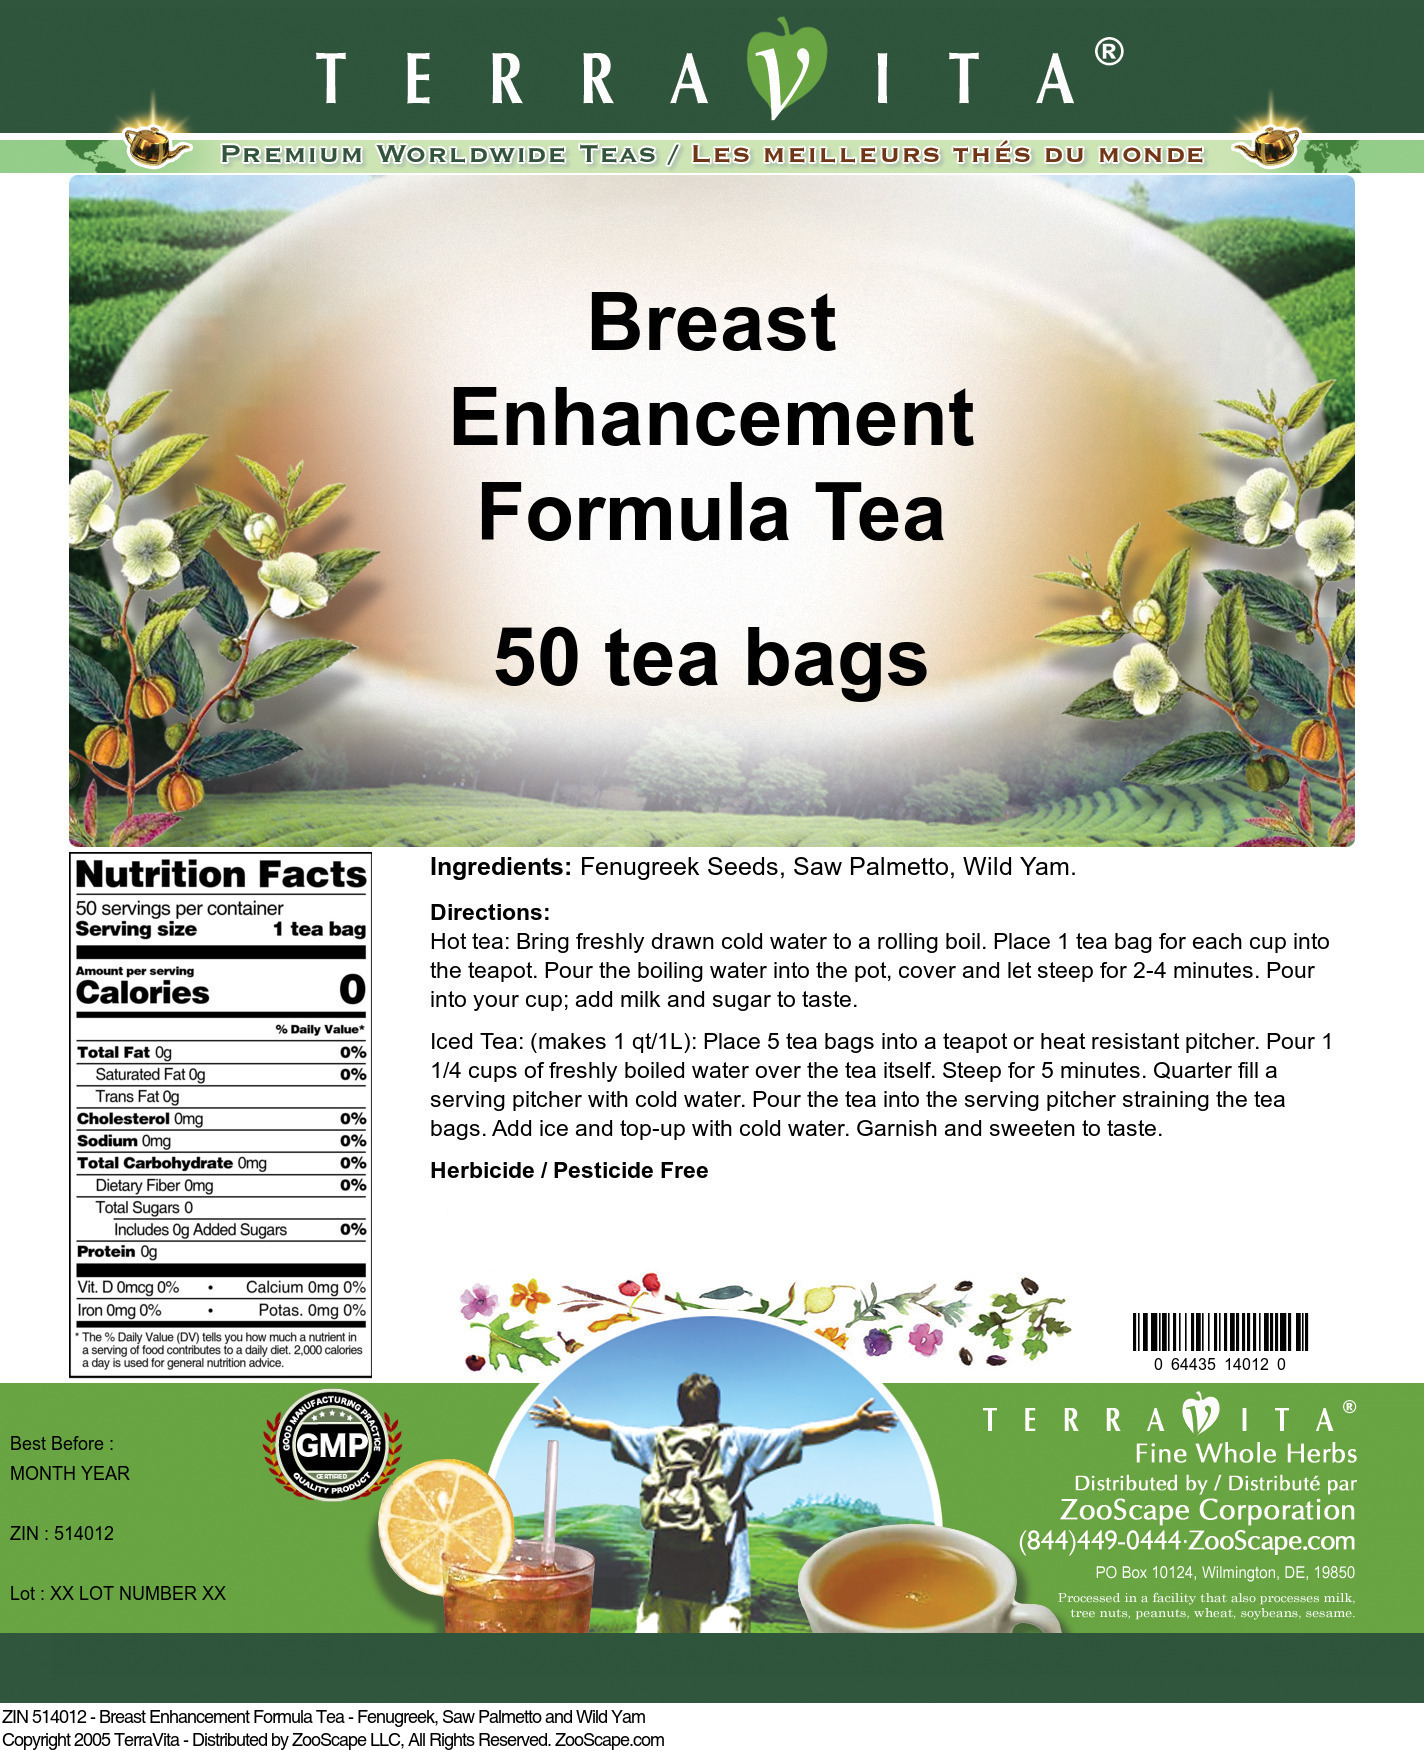 Breast Enhancement Formula Tea - Fenugreek, Saw Palmetto and Wild Yam - Label